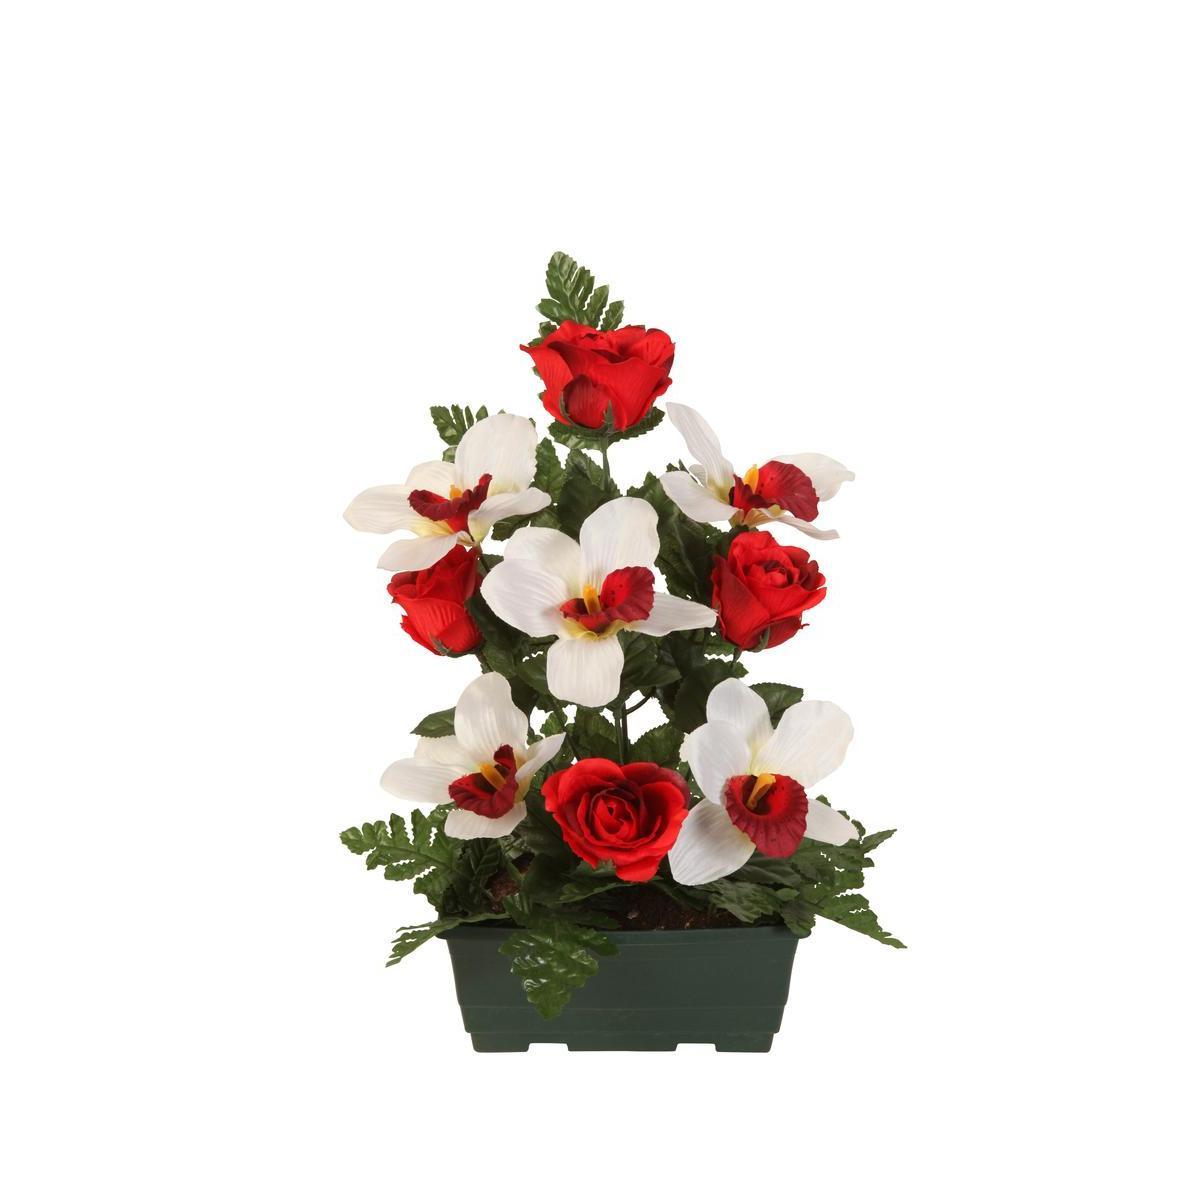 Jardinière de roses, orchidées et lys - Plastique - 18 x H 40 cm - Différents coloris